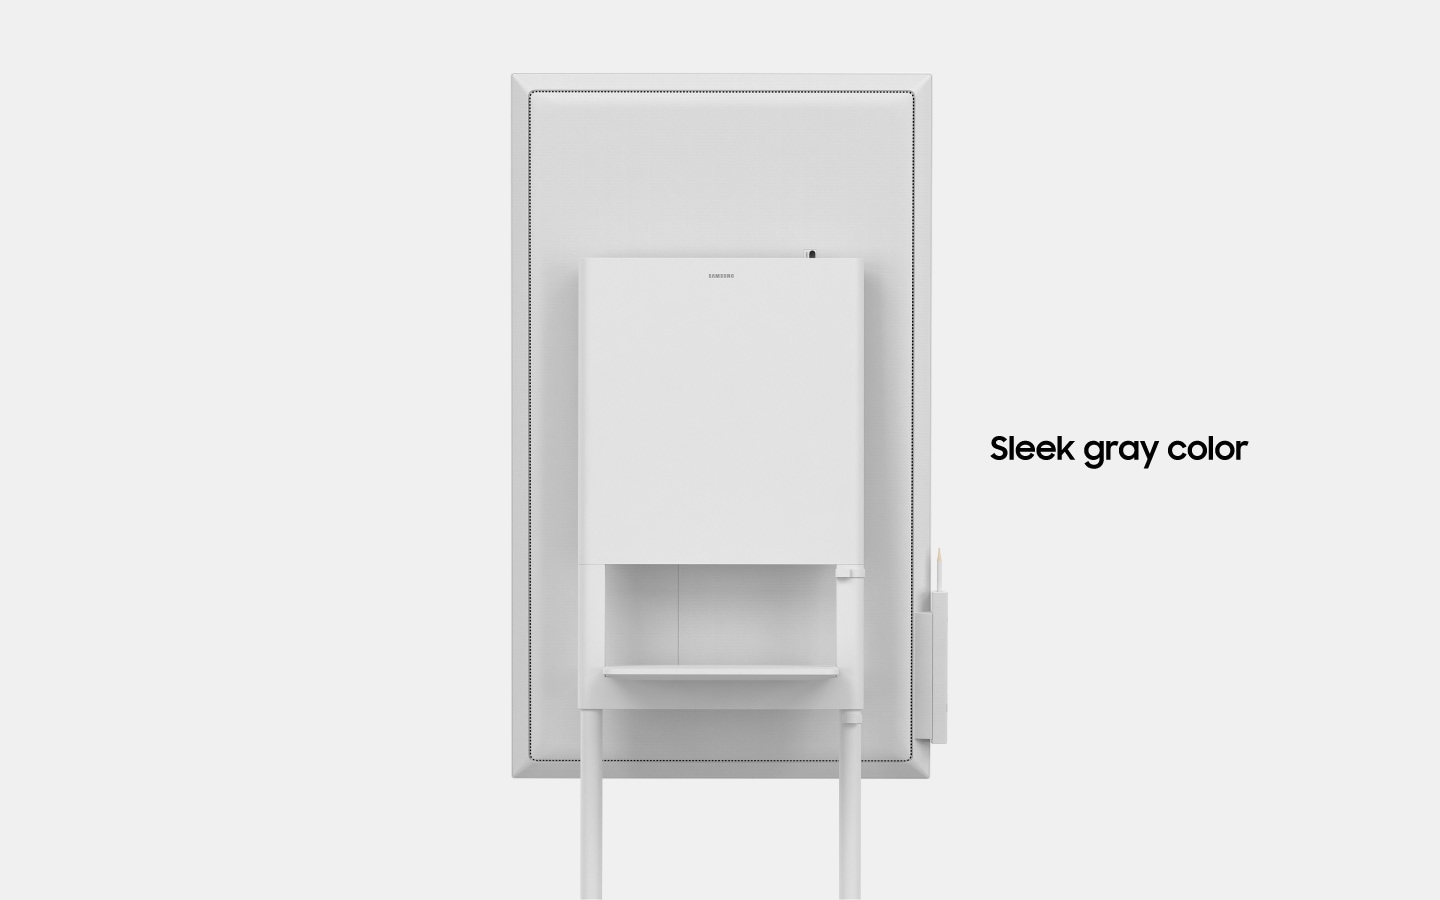 Een afbeelding van een roterende Samsung Flip, waarbij de achterkant van het toestel wordt getoond. Met de tekst "Slank, grijs design". (6-4)